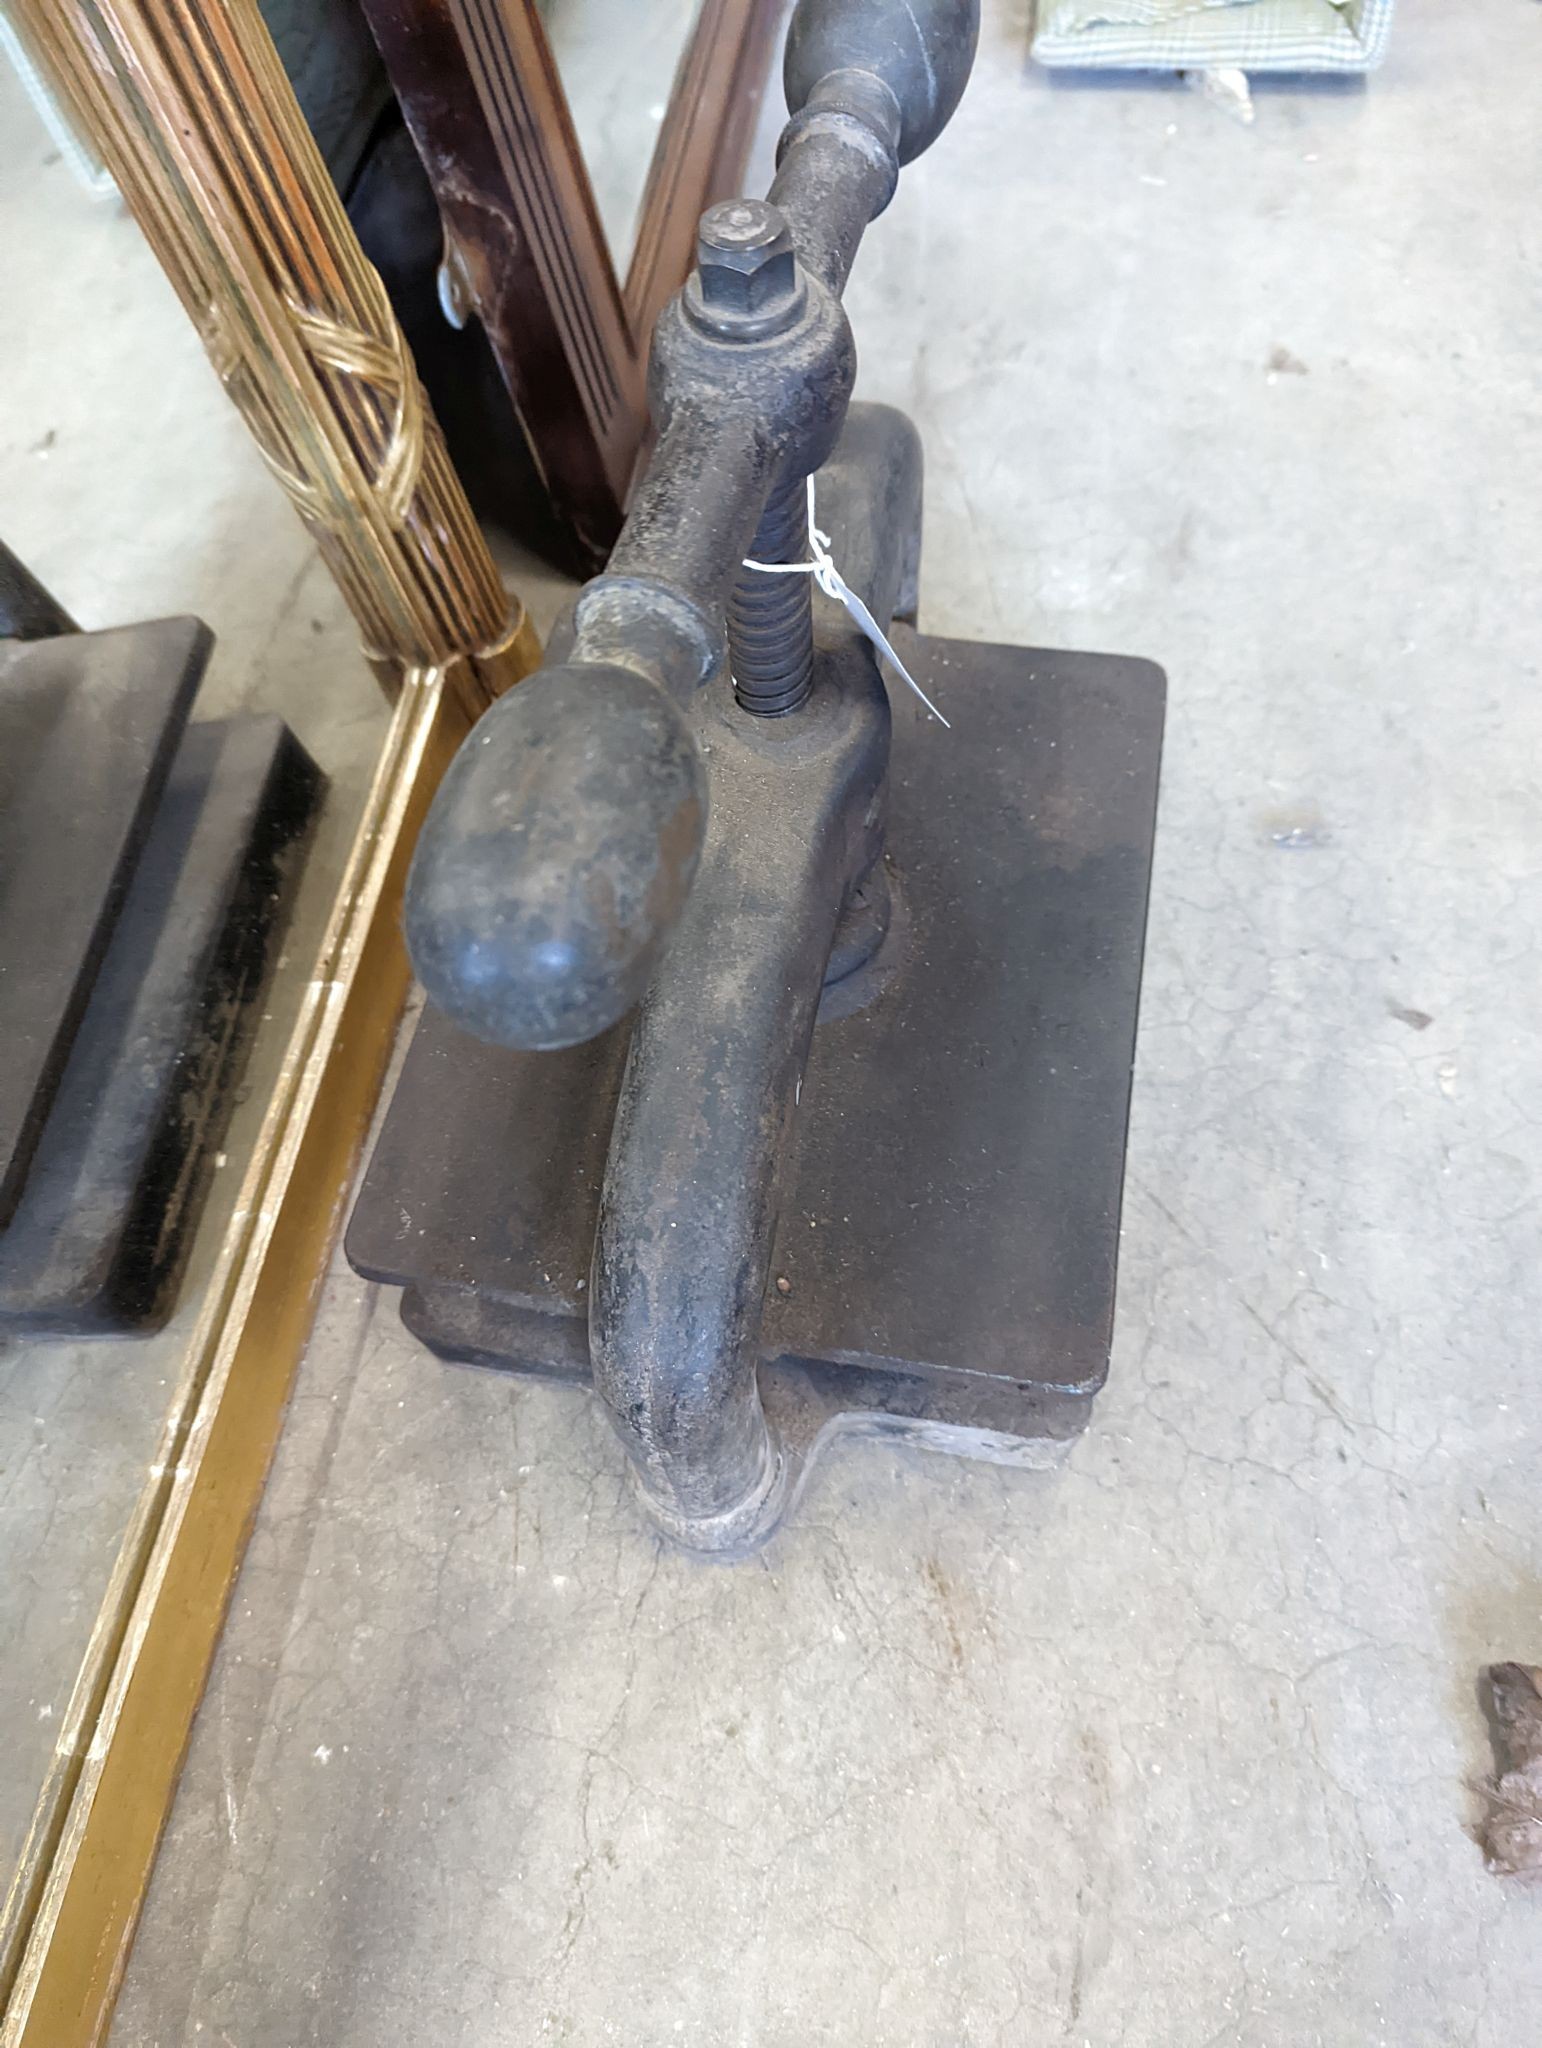 A Victorian cast iron book press, width 40cm, height 36cm